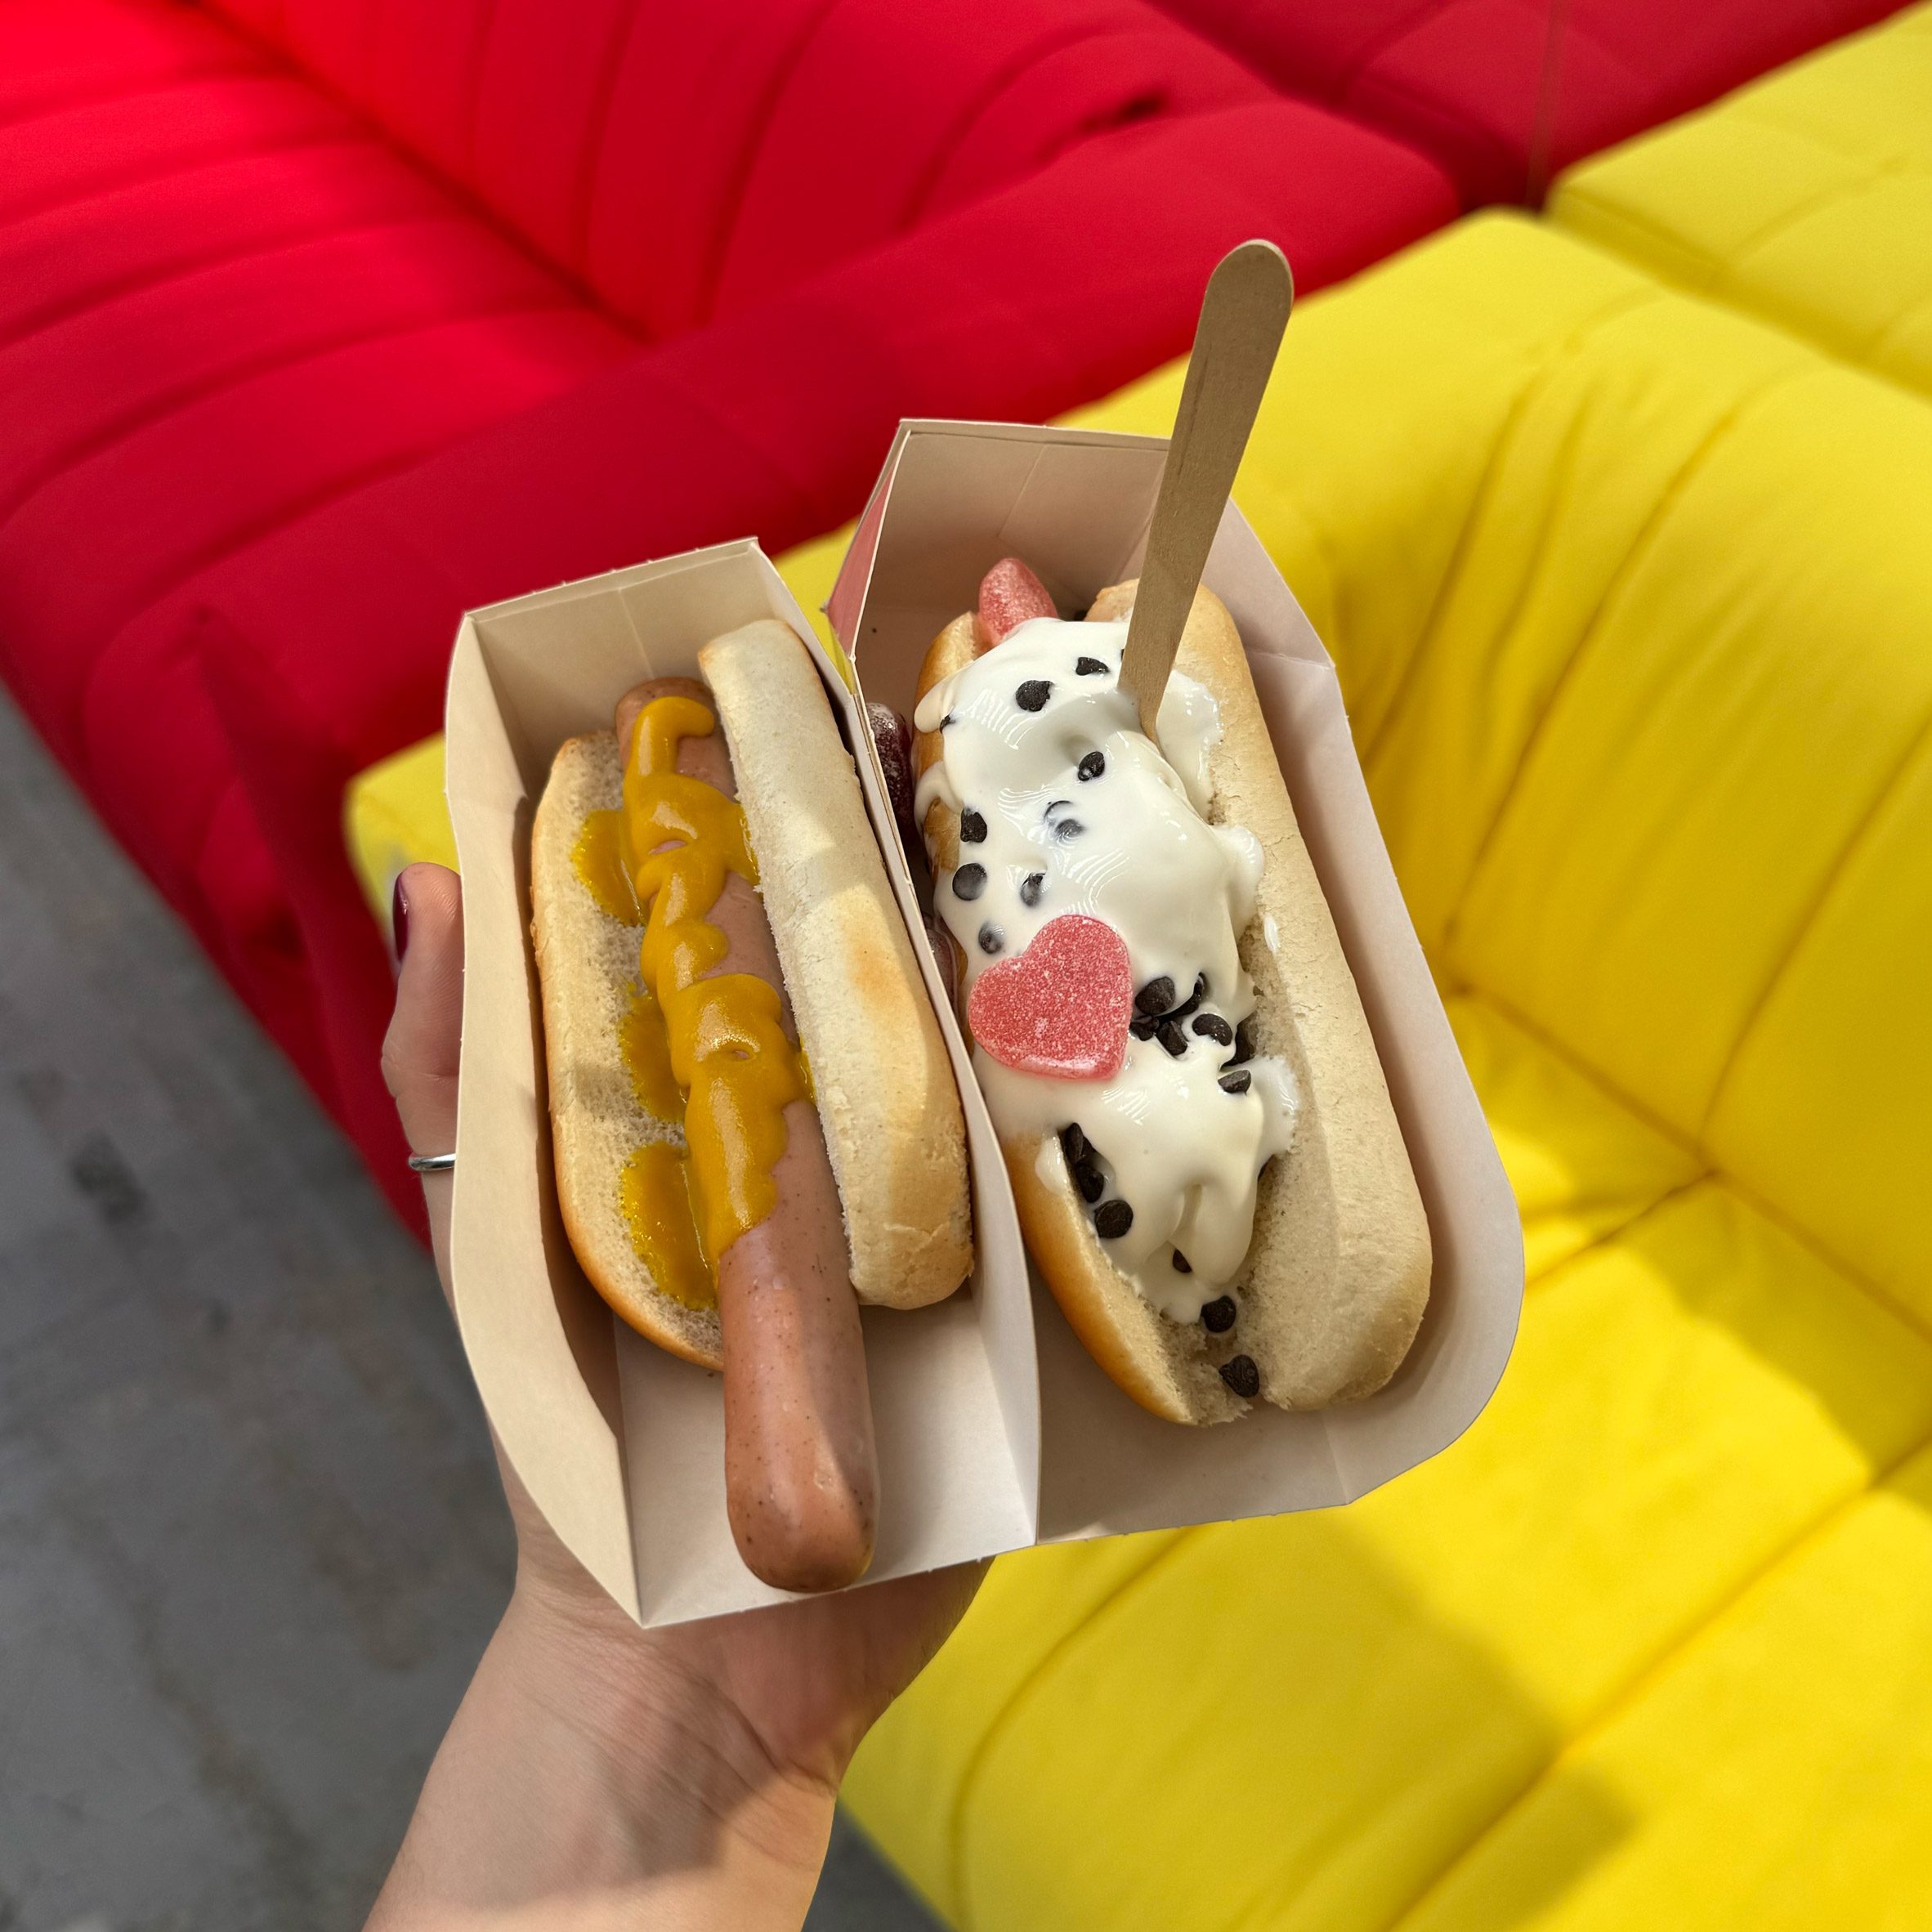 IKEA hot dogs